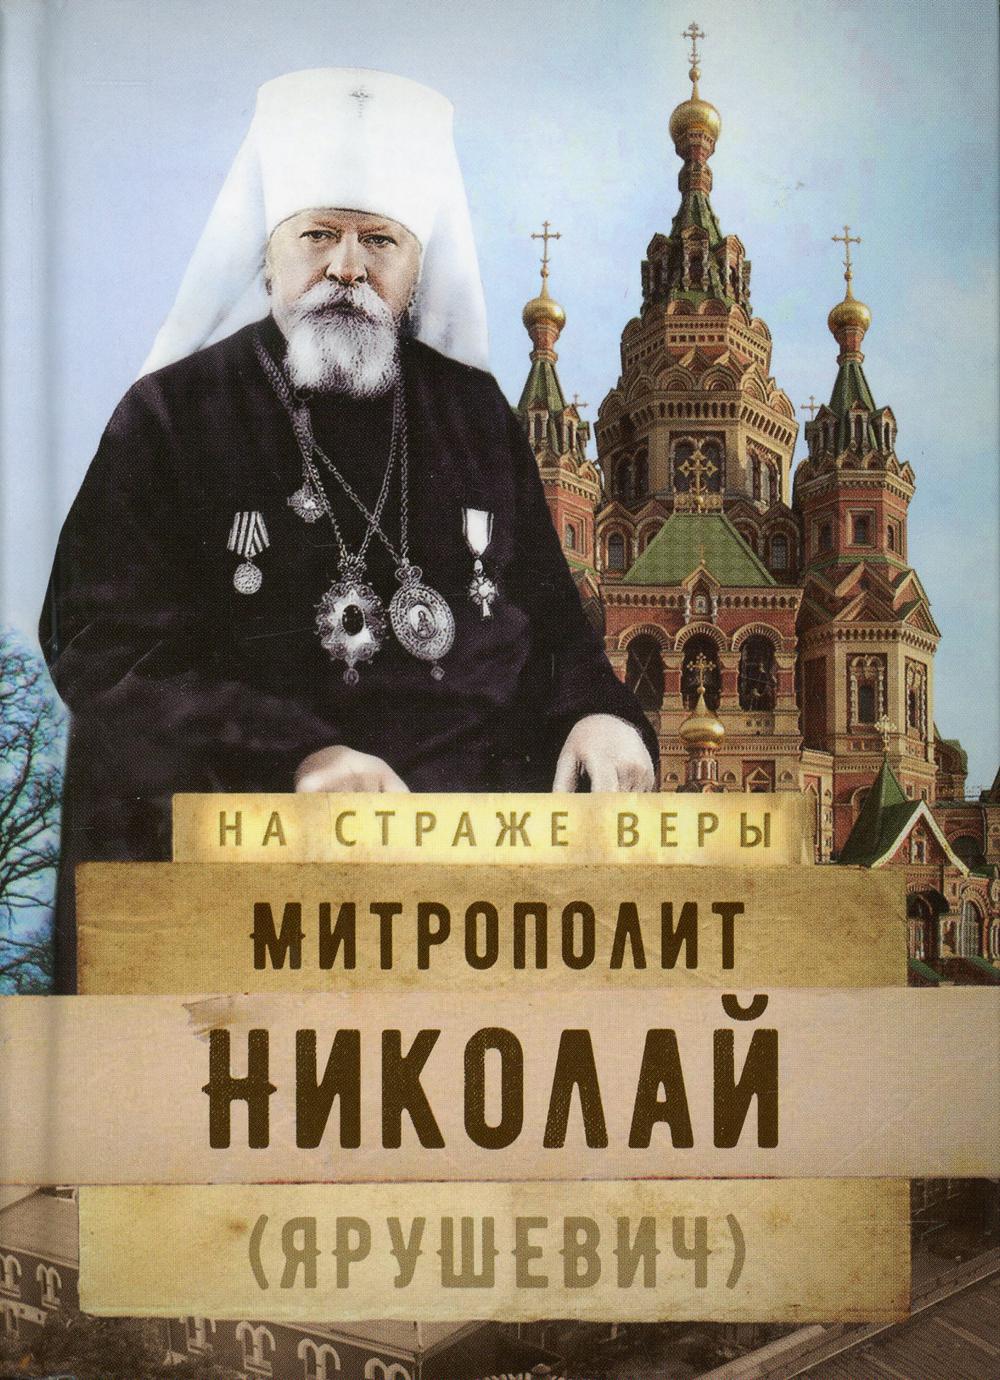 фото Книга митрополит николай (ярушевич) сретенский монастырь